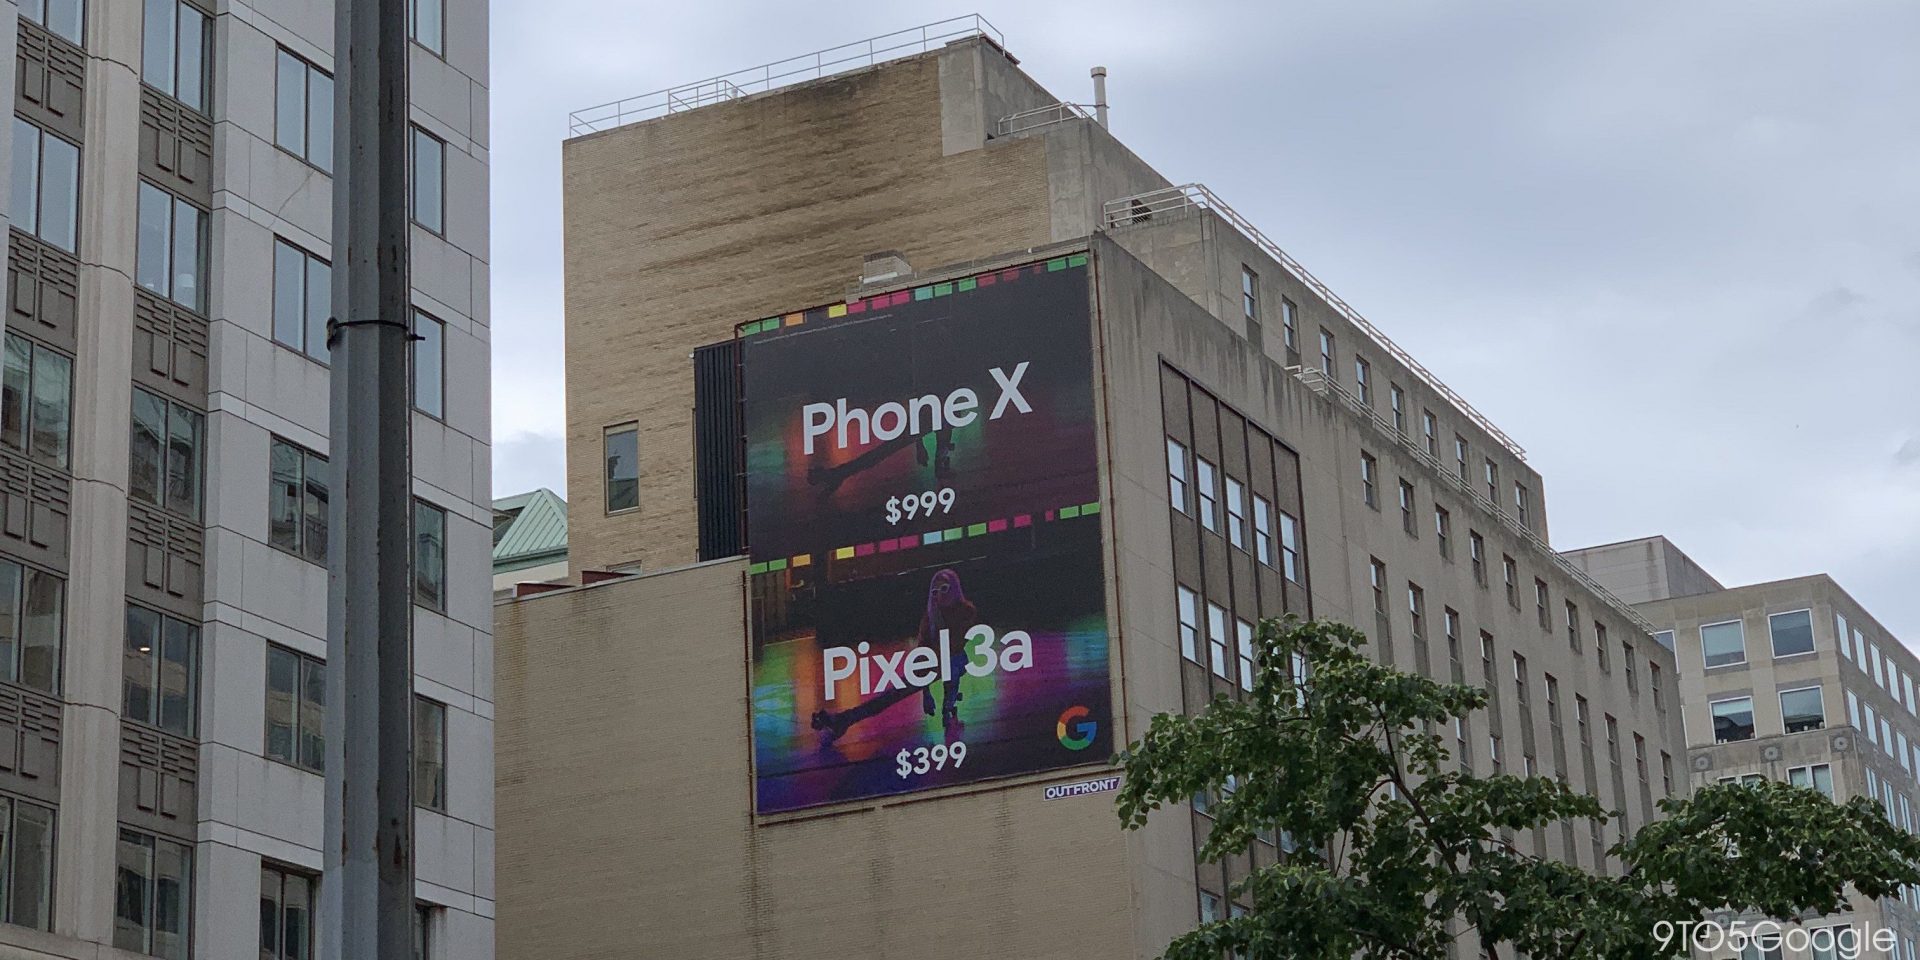 Google ออกโฆษณา Pixel 3a ย้ำกล้องที่ดีกว่า iPhone X ในราคาที่ถูกเกินครึ่ง!